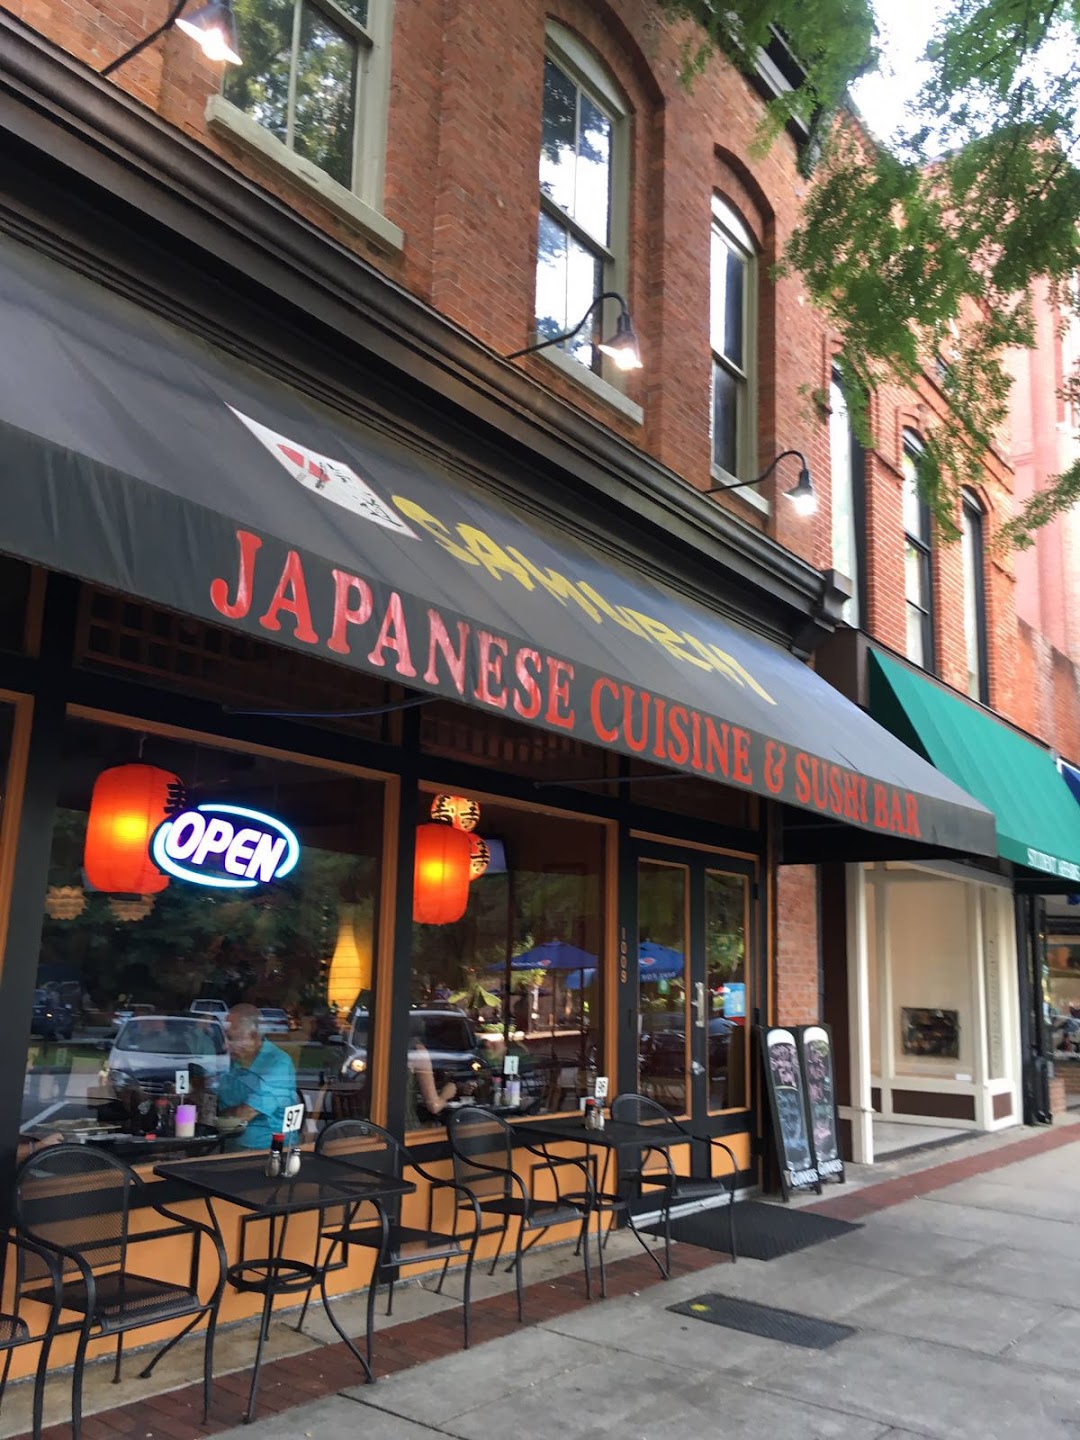 Samurai Japanese Cuisine and Sushi Bar